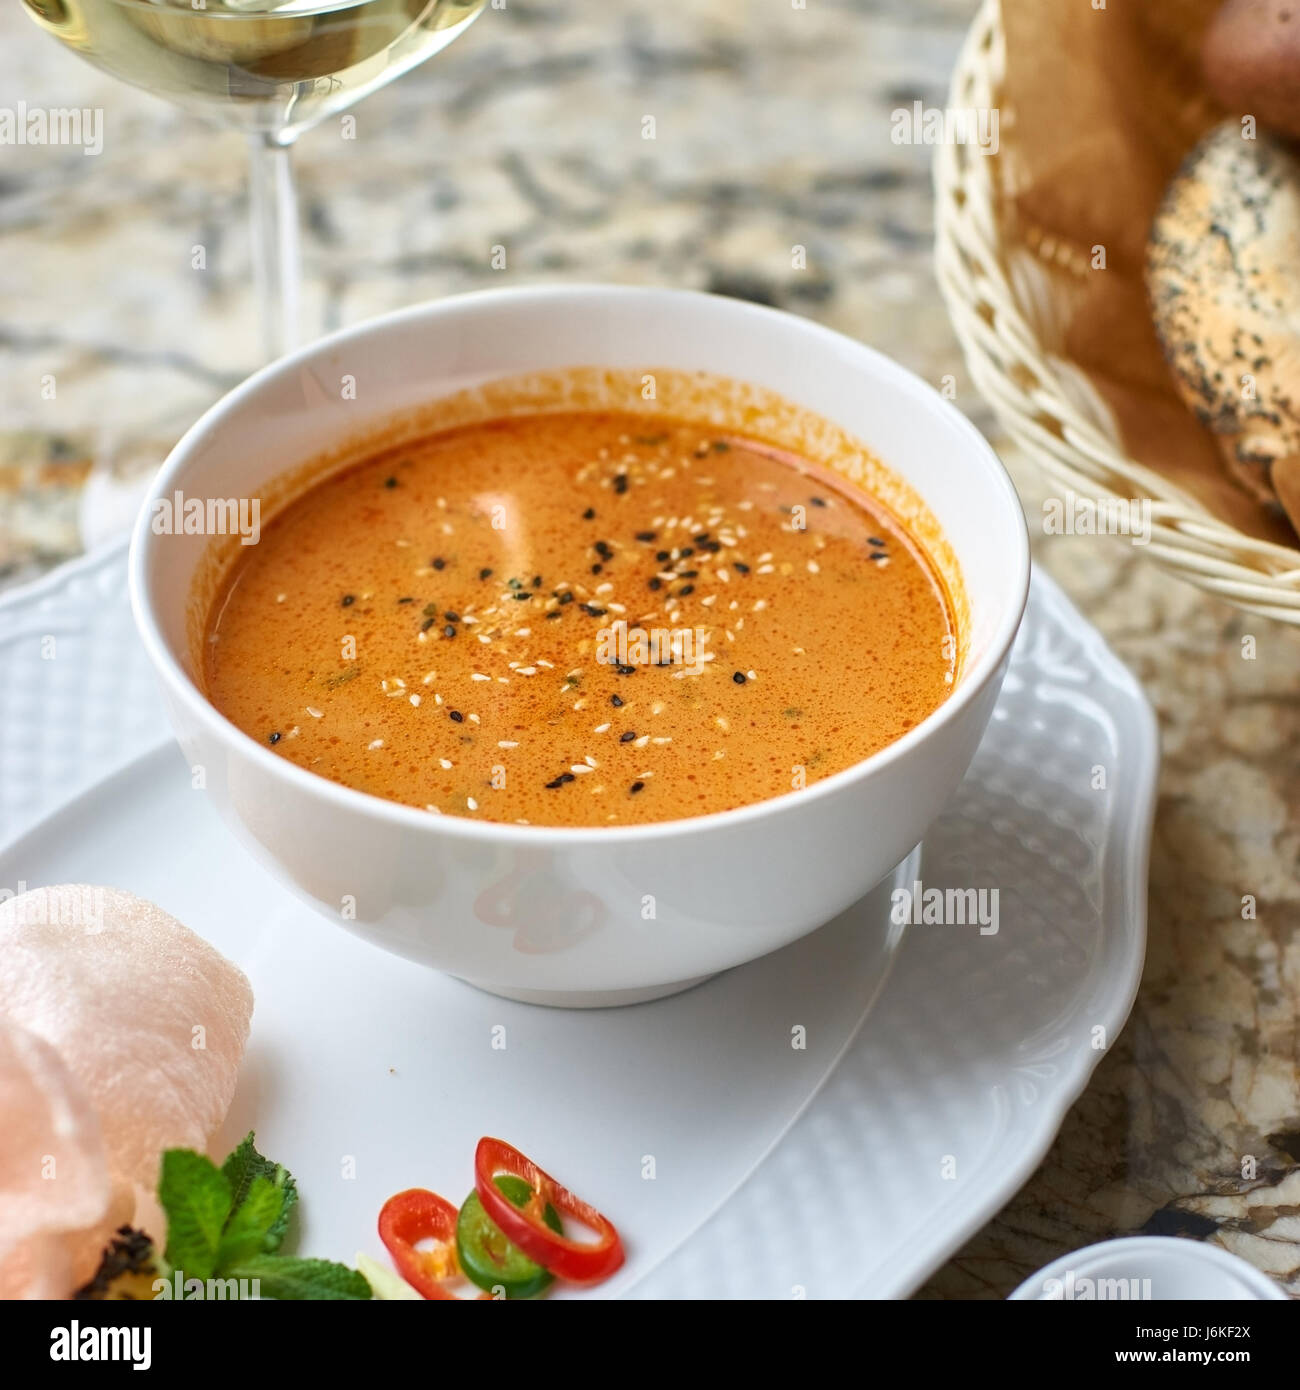 Peranakan cuisine. Singapore Laksa soup Stock Photo